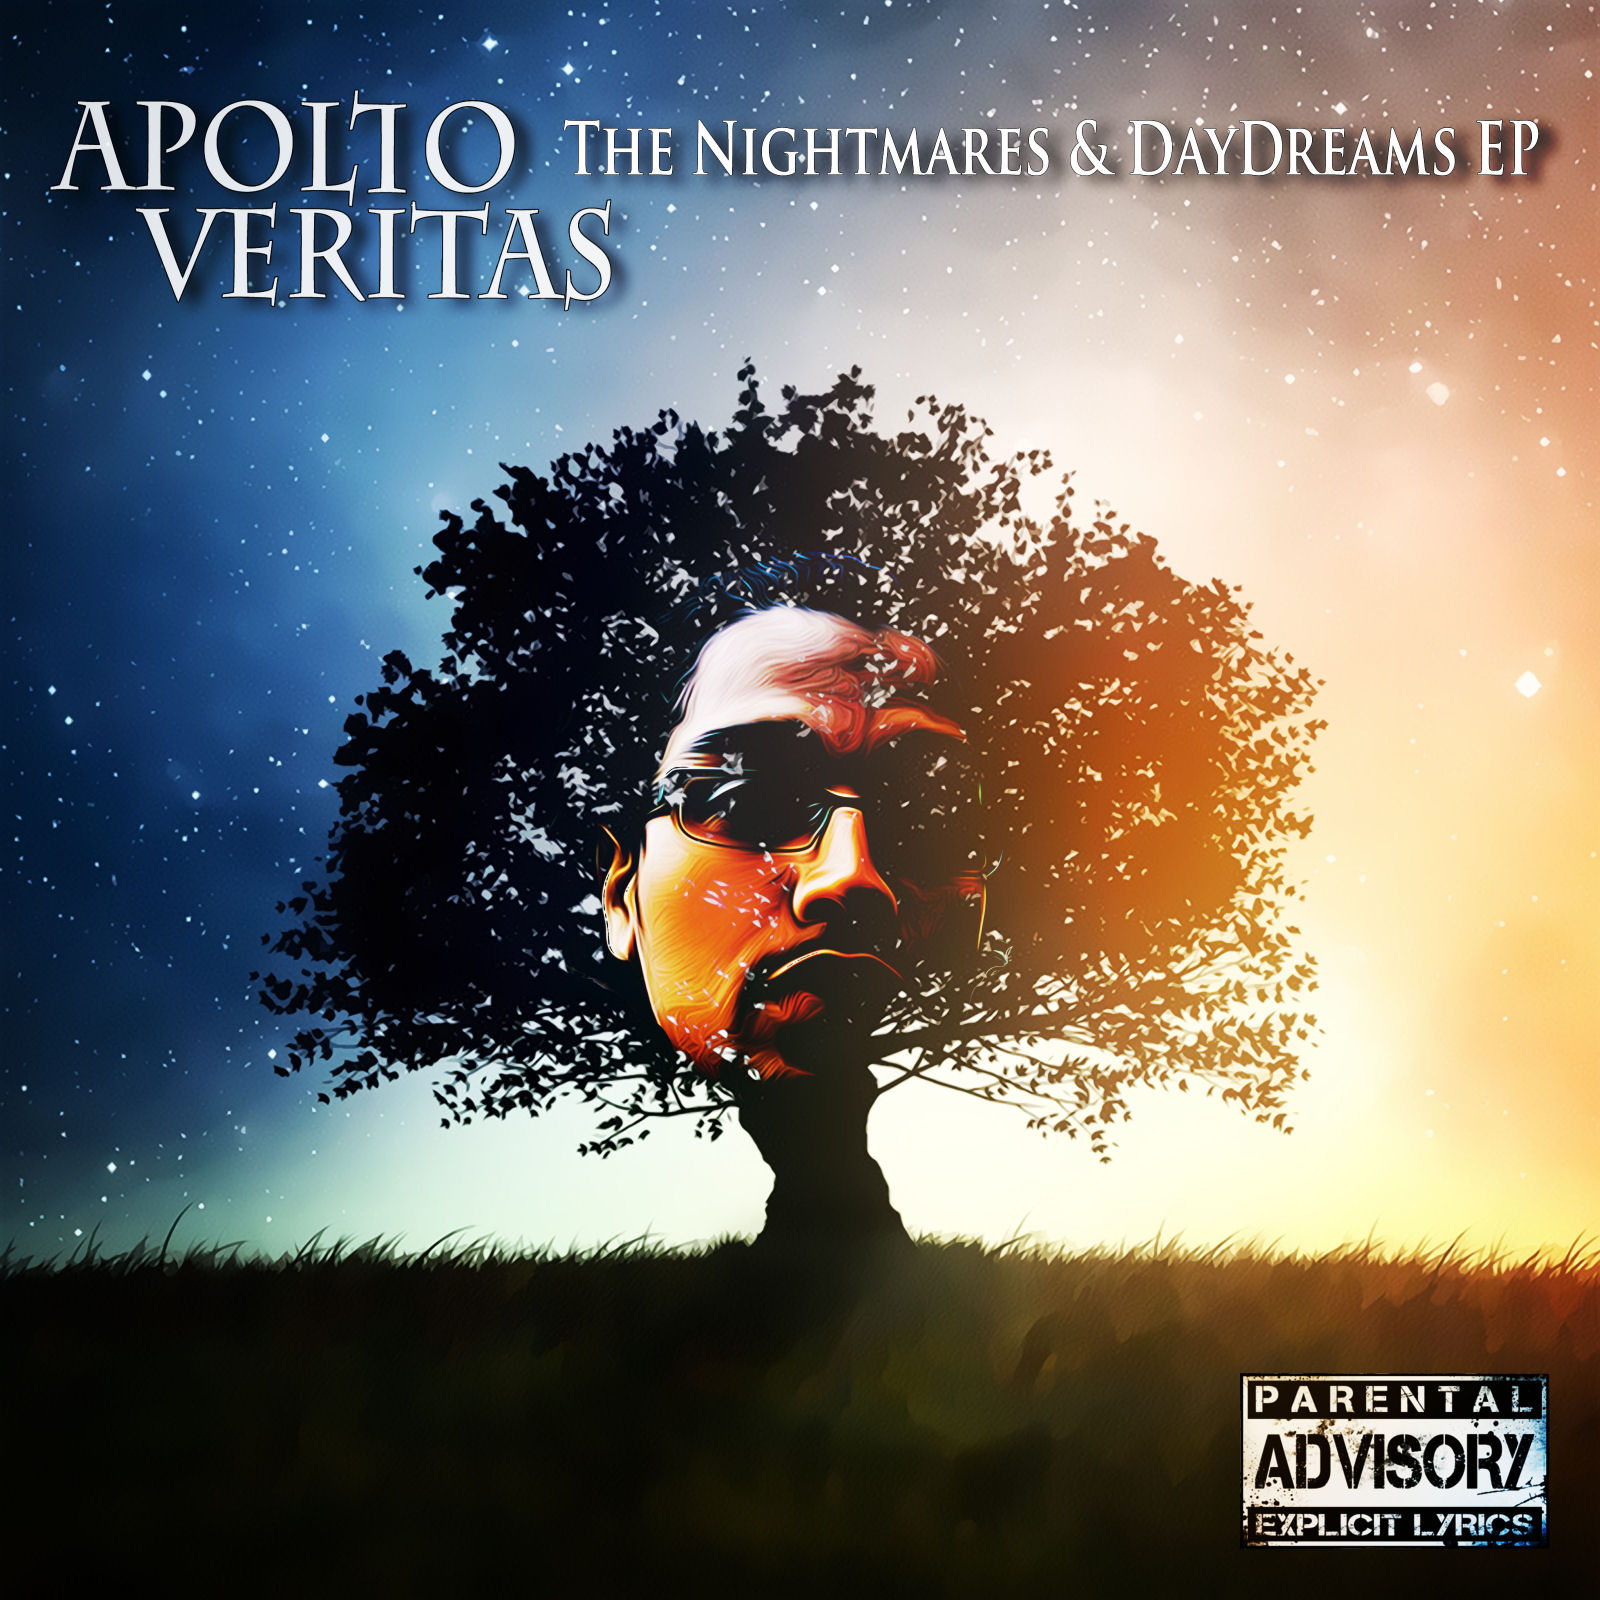  Apollo Veritas – The Nightmares & Daydreams EP